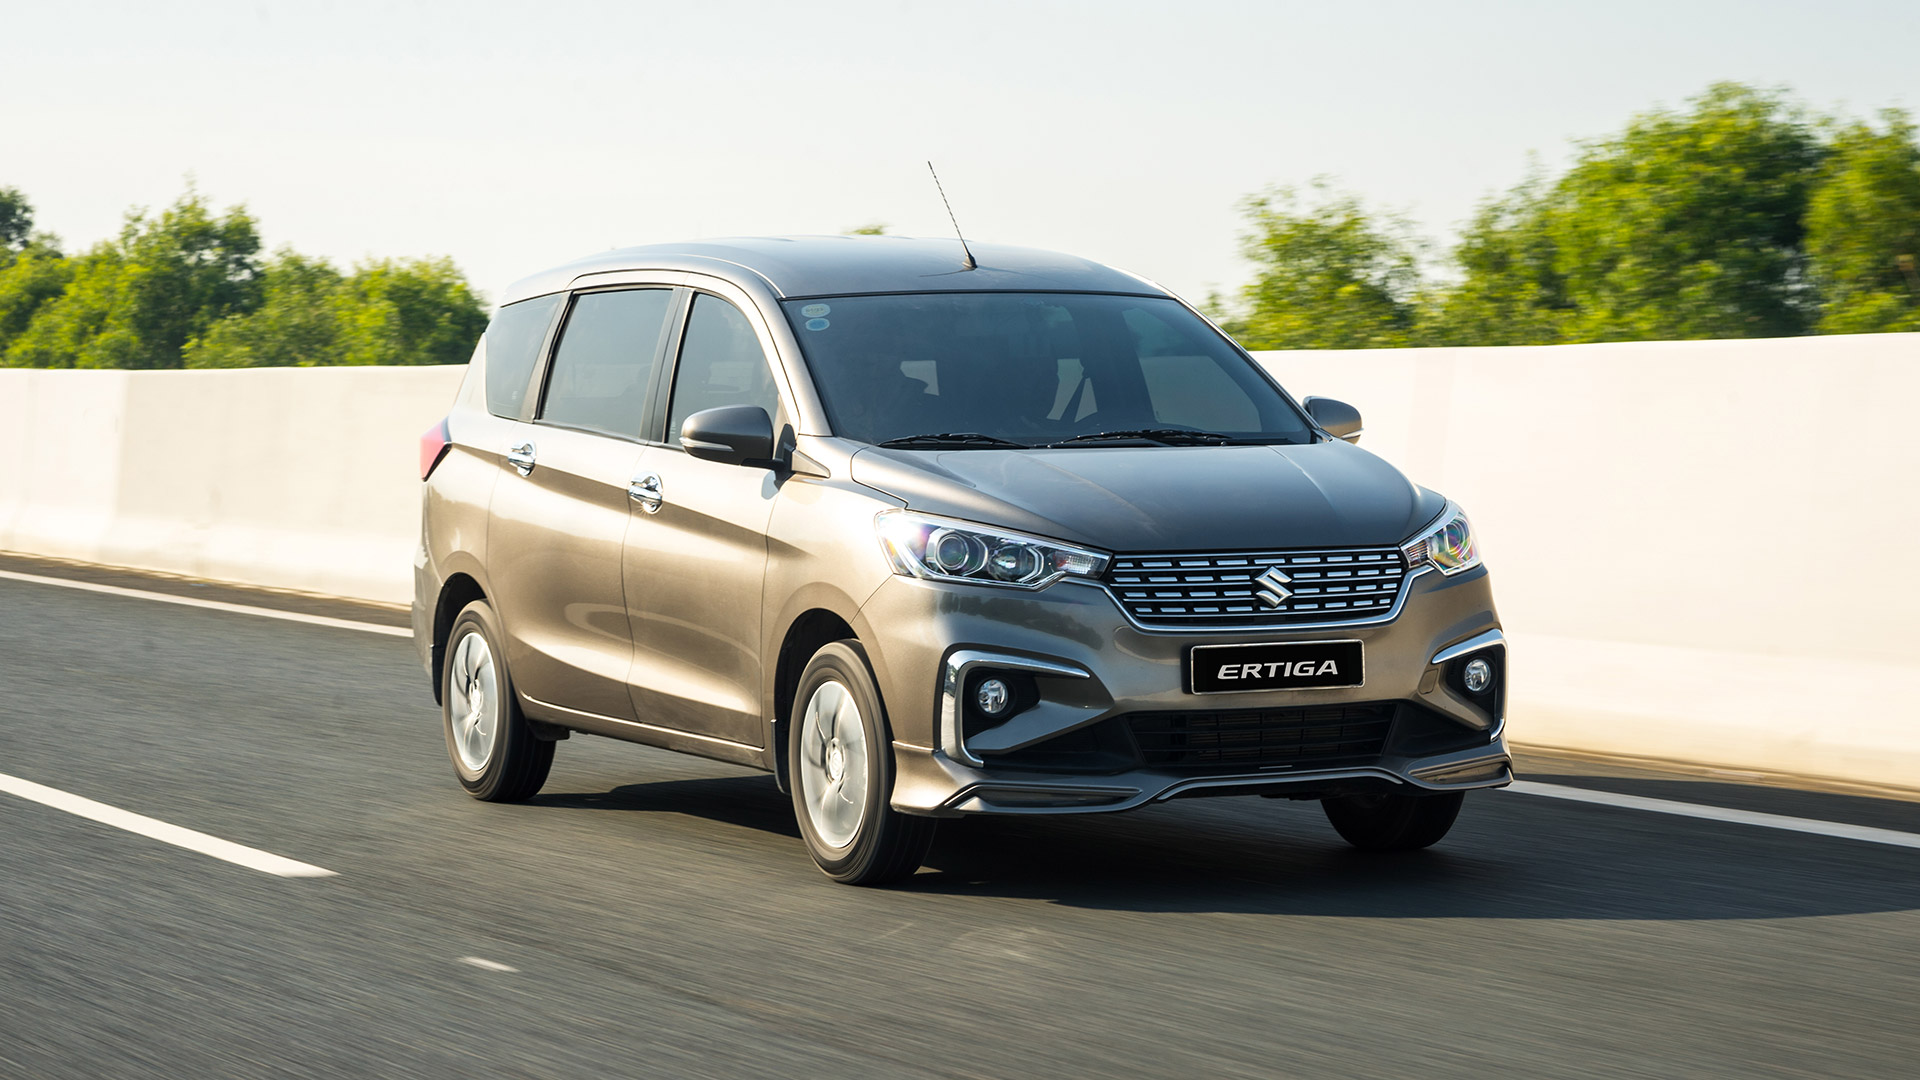 Lọt top 10 thương hiệu ô tô người Việt ưa chuộng nhất 2020, Suzuki ưu đãi lớn khách hàng suzuki-ertiga.jpg